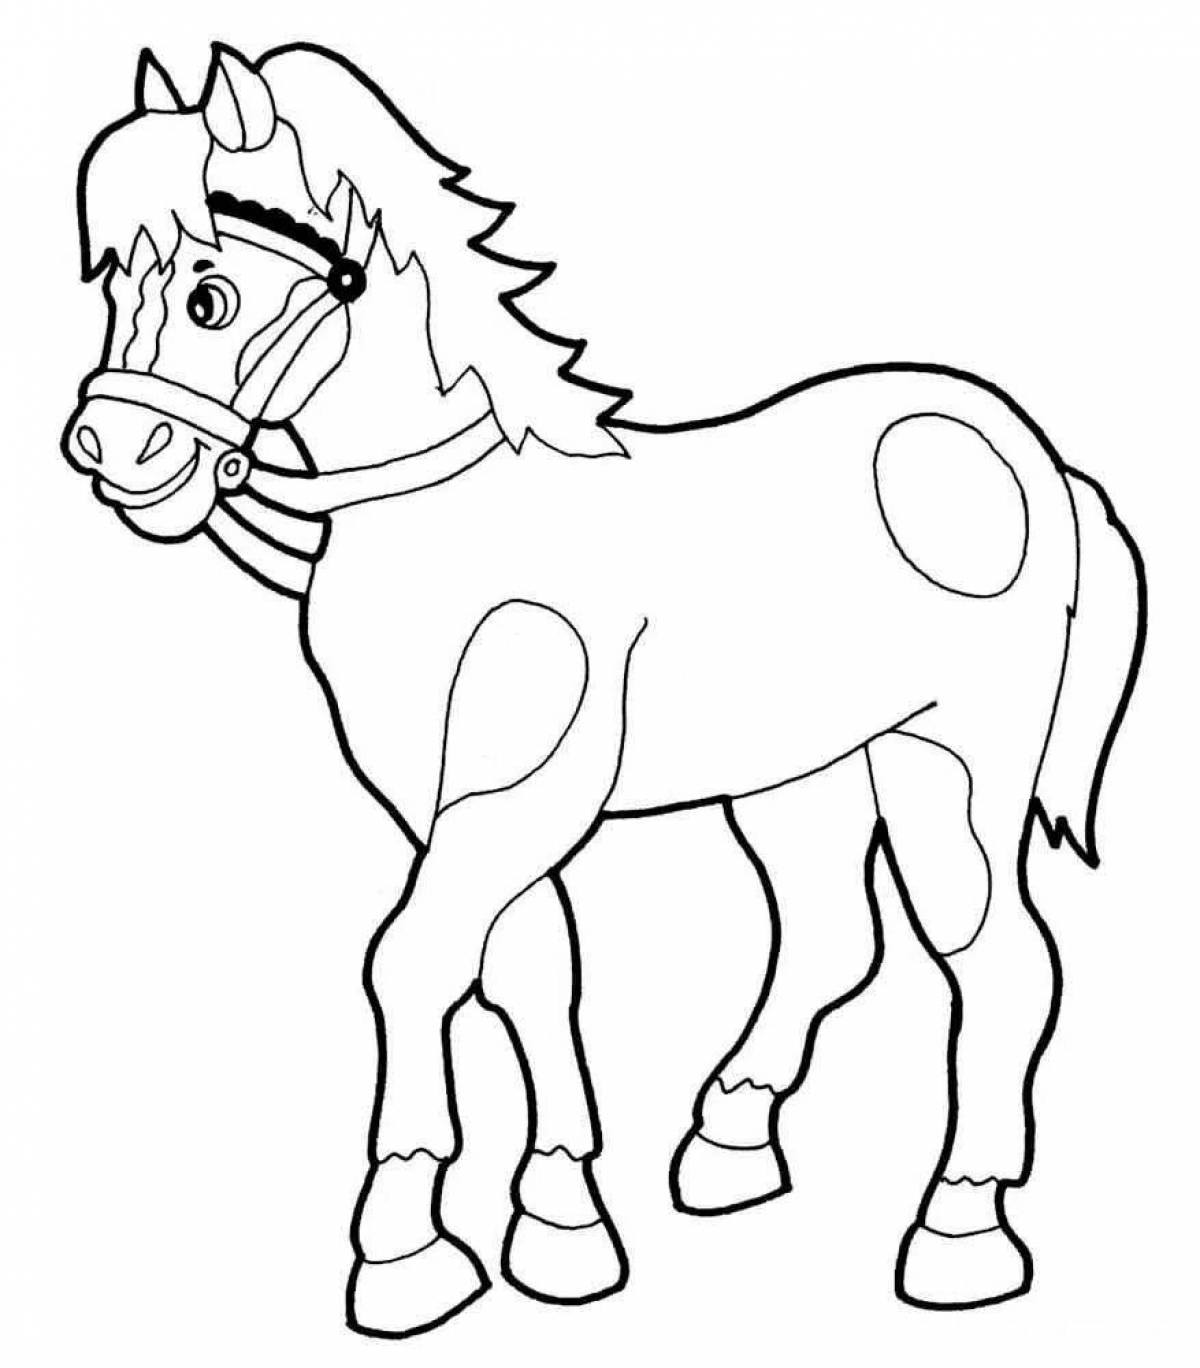 Веселая раскраска лошадь для детей 6-7 лет